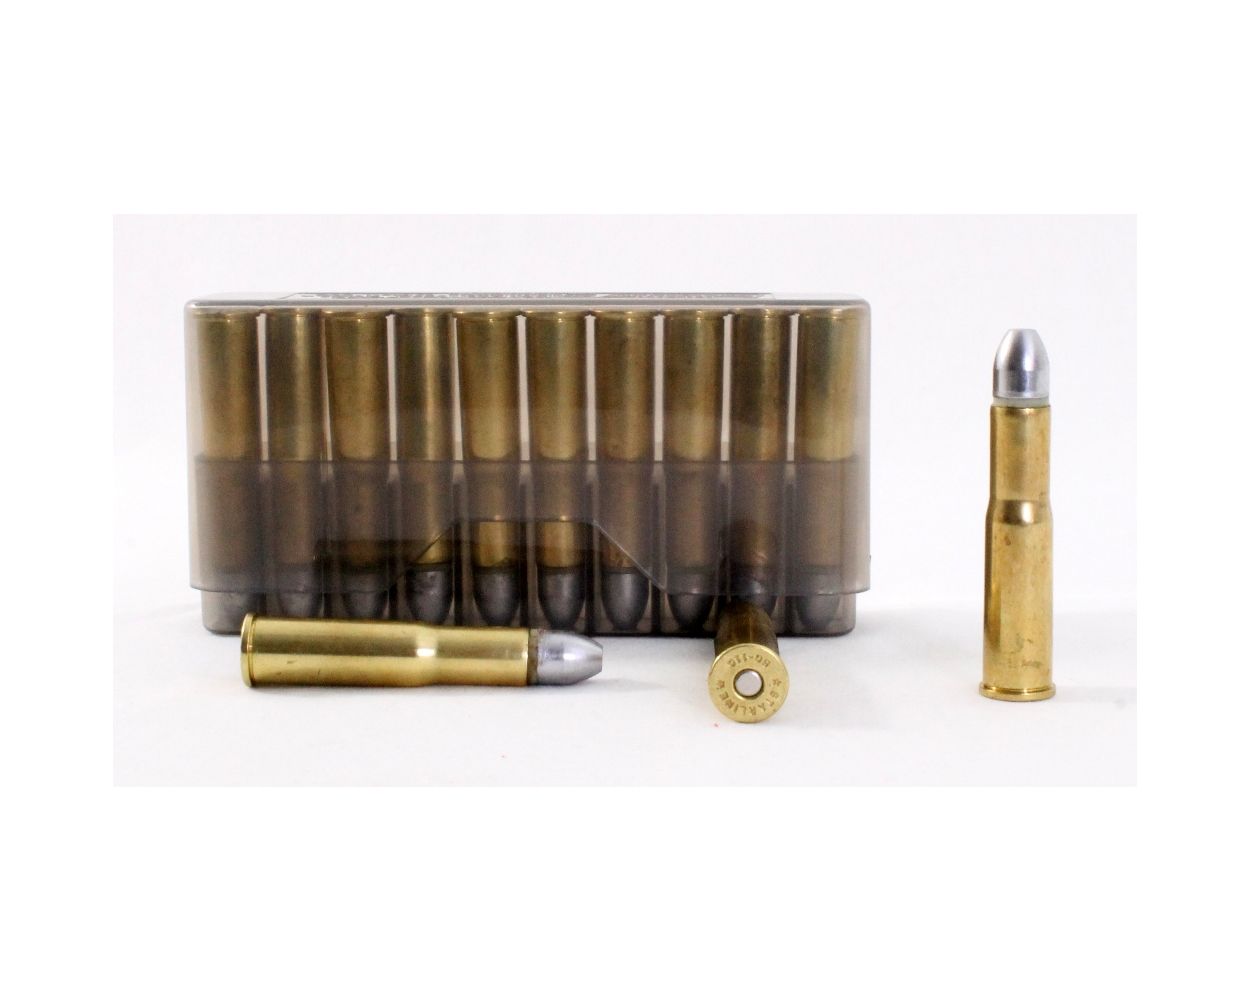 Vintage Lyman Products Patch Ammo Ammunition Bullets Reloading Press Brass-Smith 